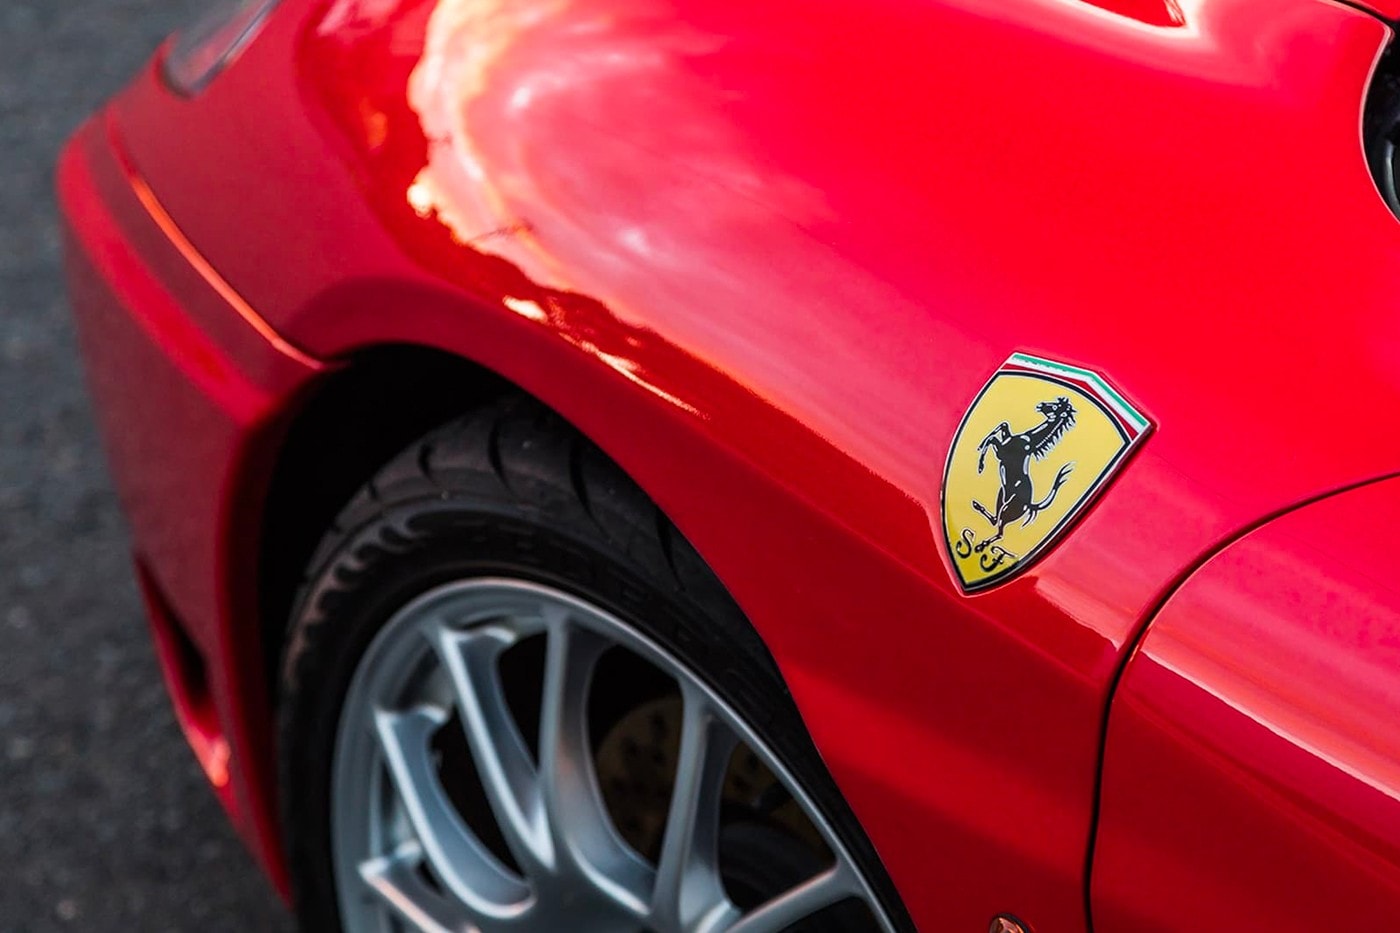 2003 年 Ferrari 360 Modena 加長豪華轎車展開販售